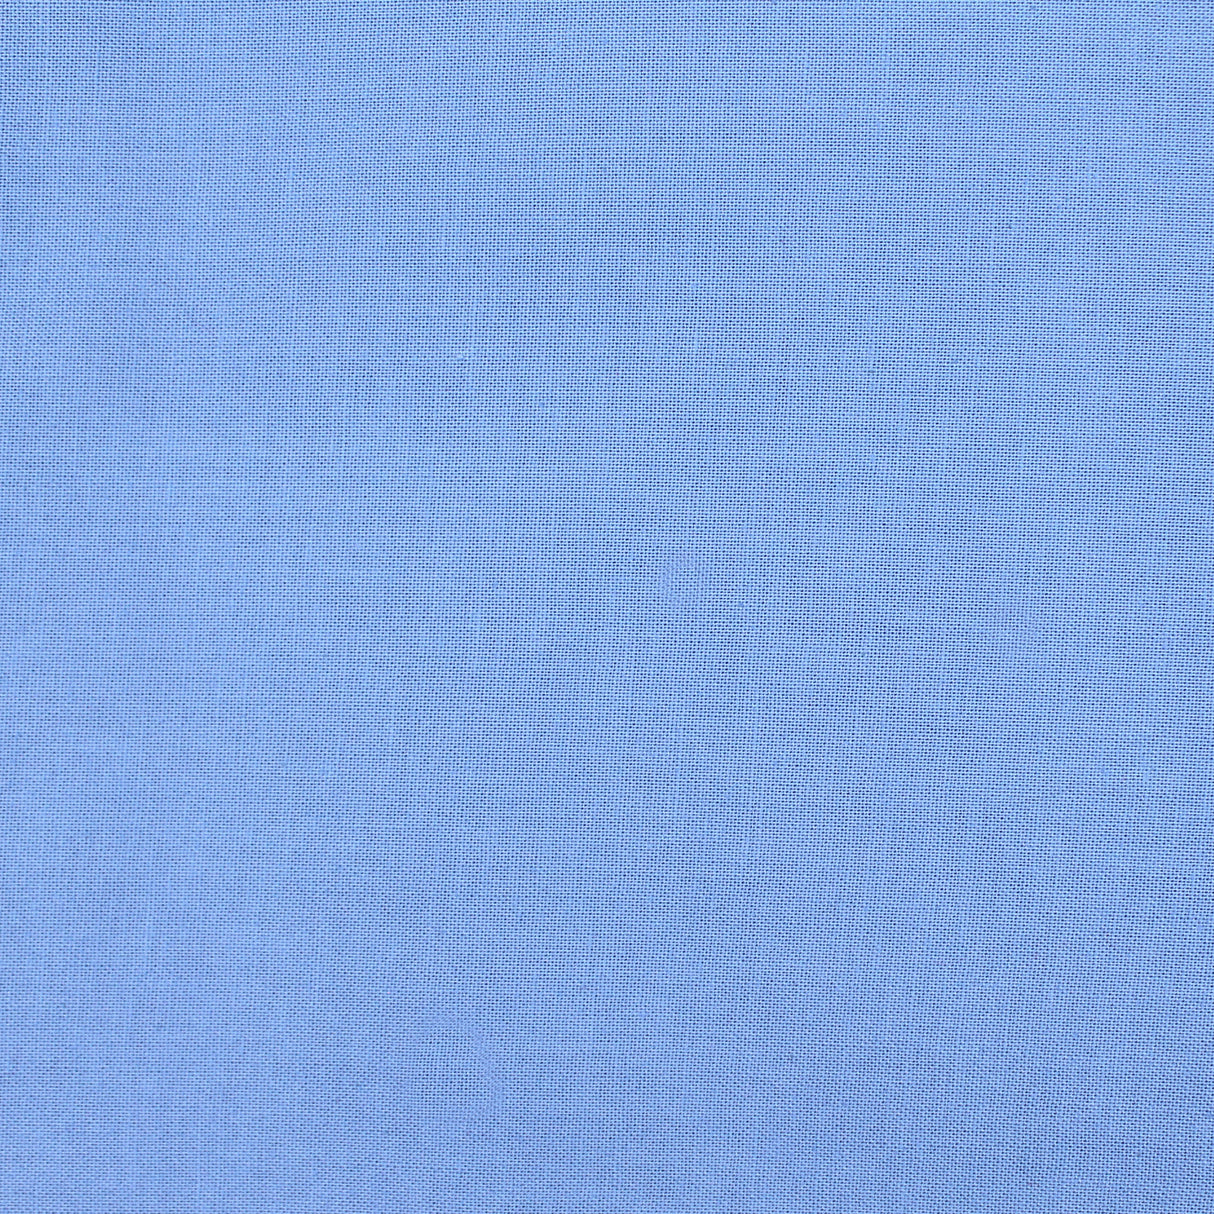 cotton colour bluebonnet